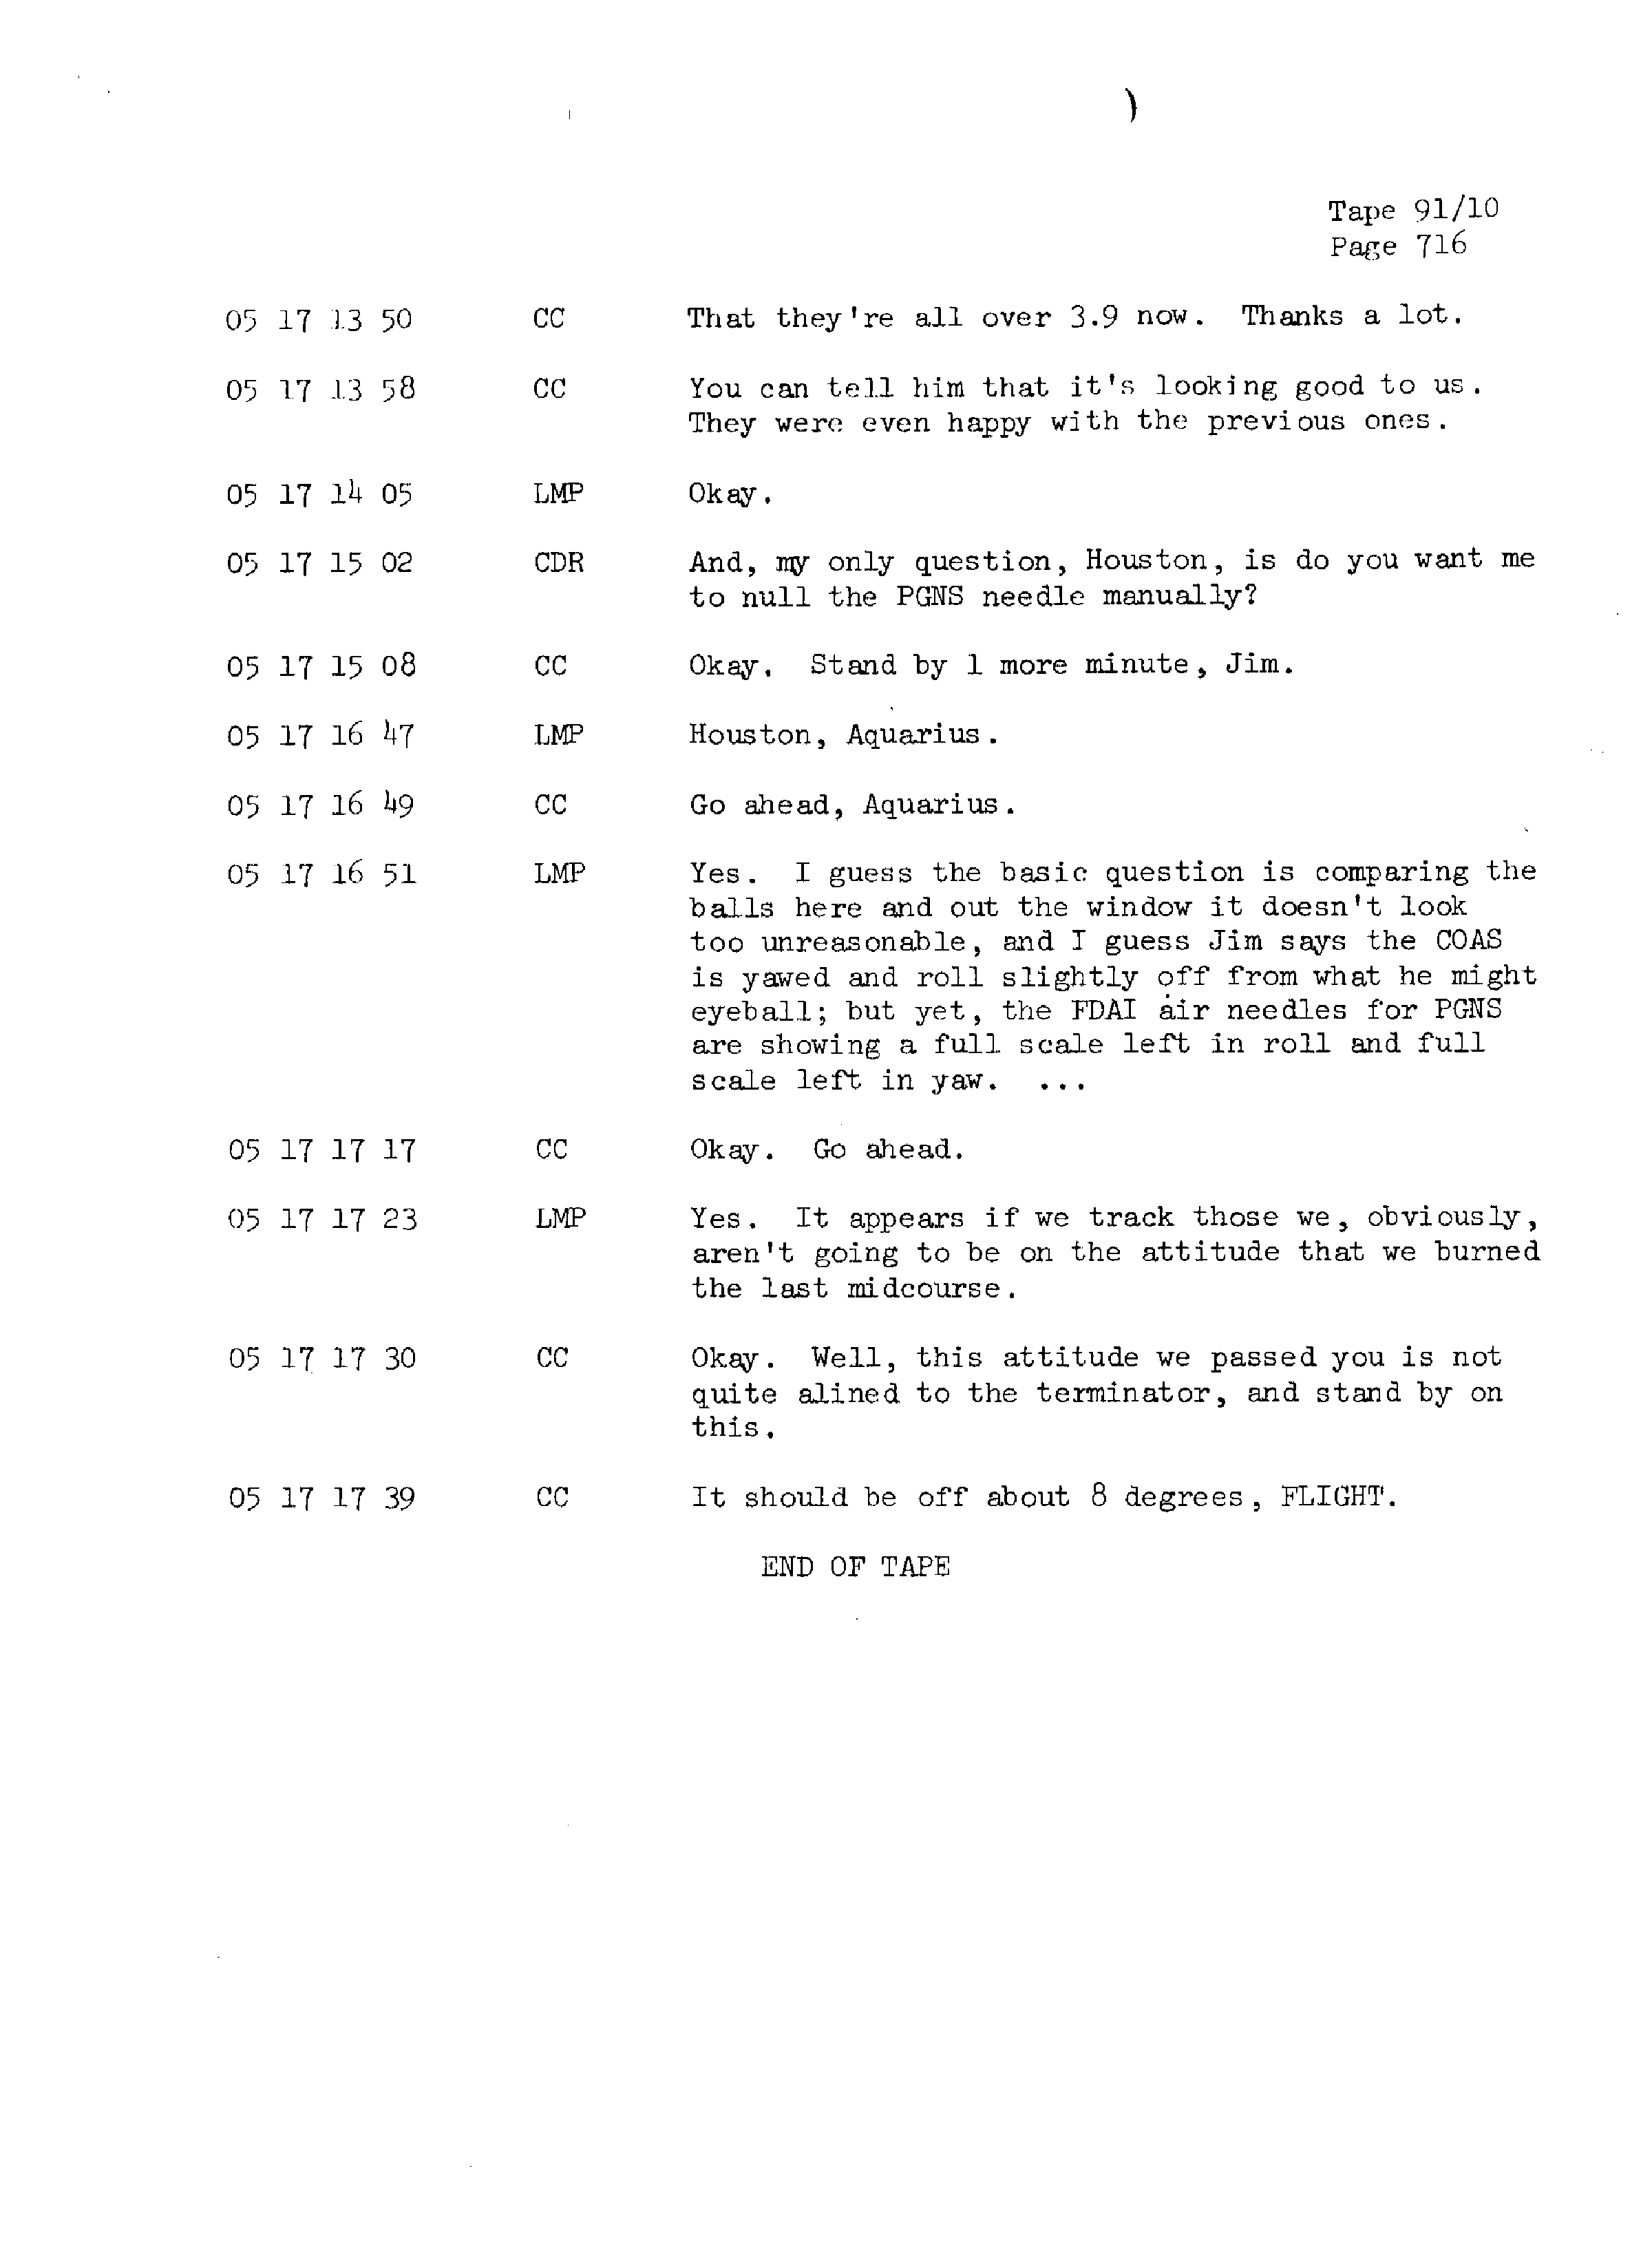 Page 723 of Apollo 13’s original transcript